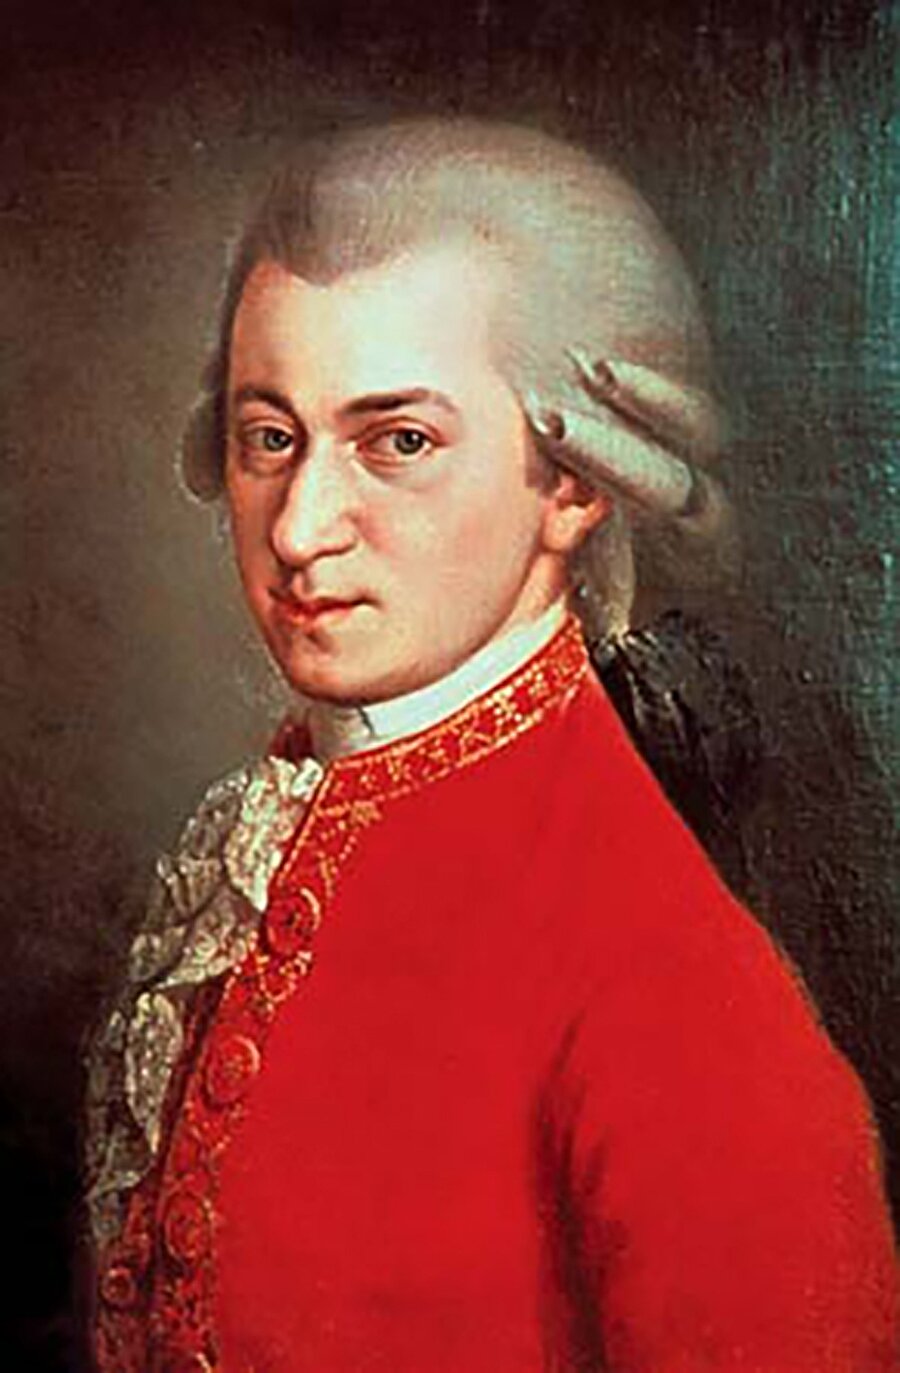 Mozart 
Mozart klasik batı müziğinin en etkili ve en üretken sanatçısı olarak bilinmektedir. Çirkin seslere dayanamıyor hatta baygınlık bile geçirdiği oluyordu.